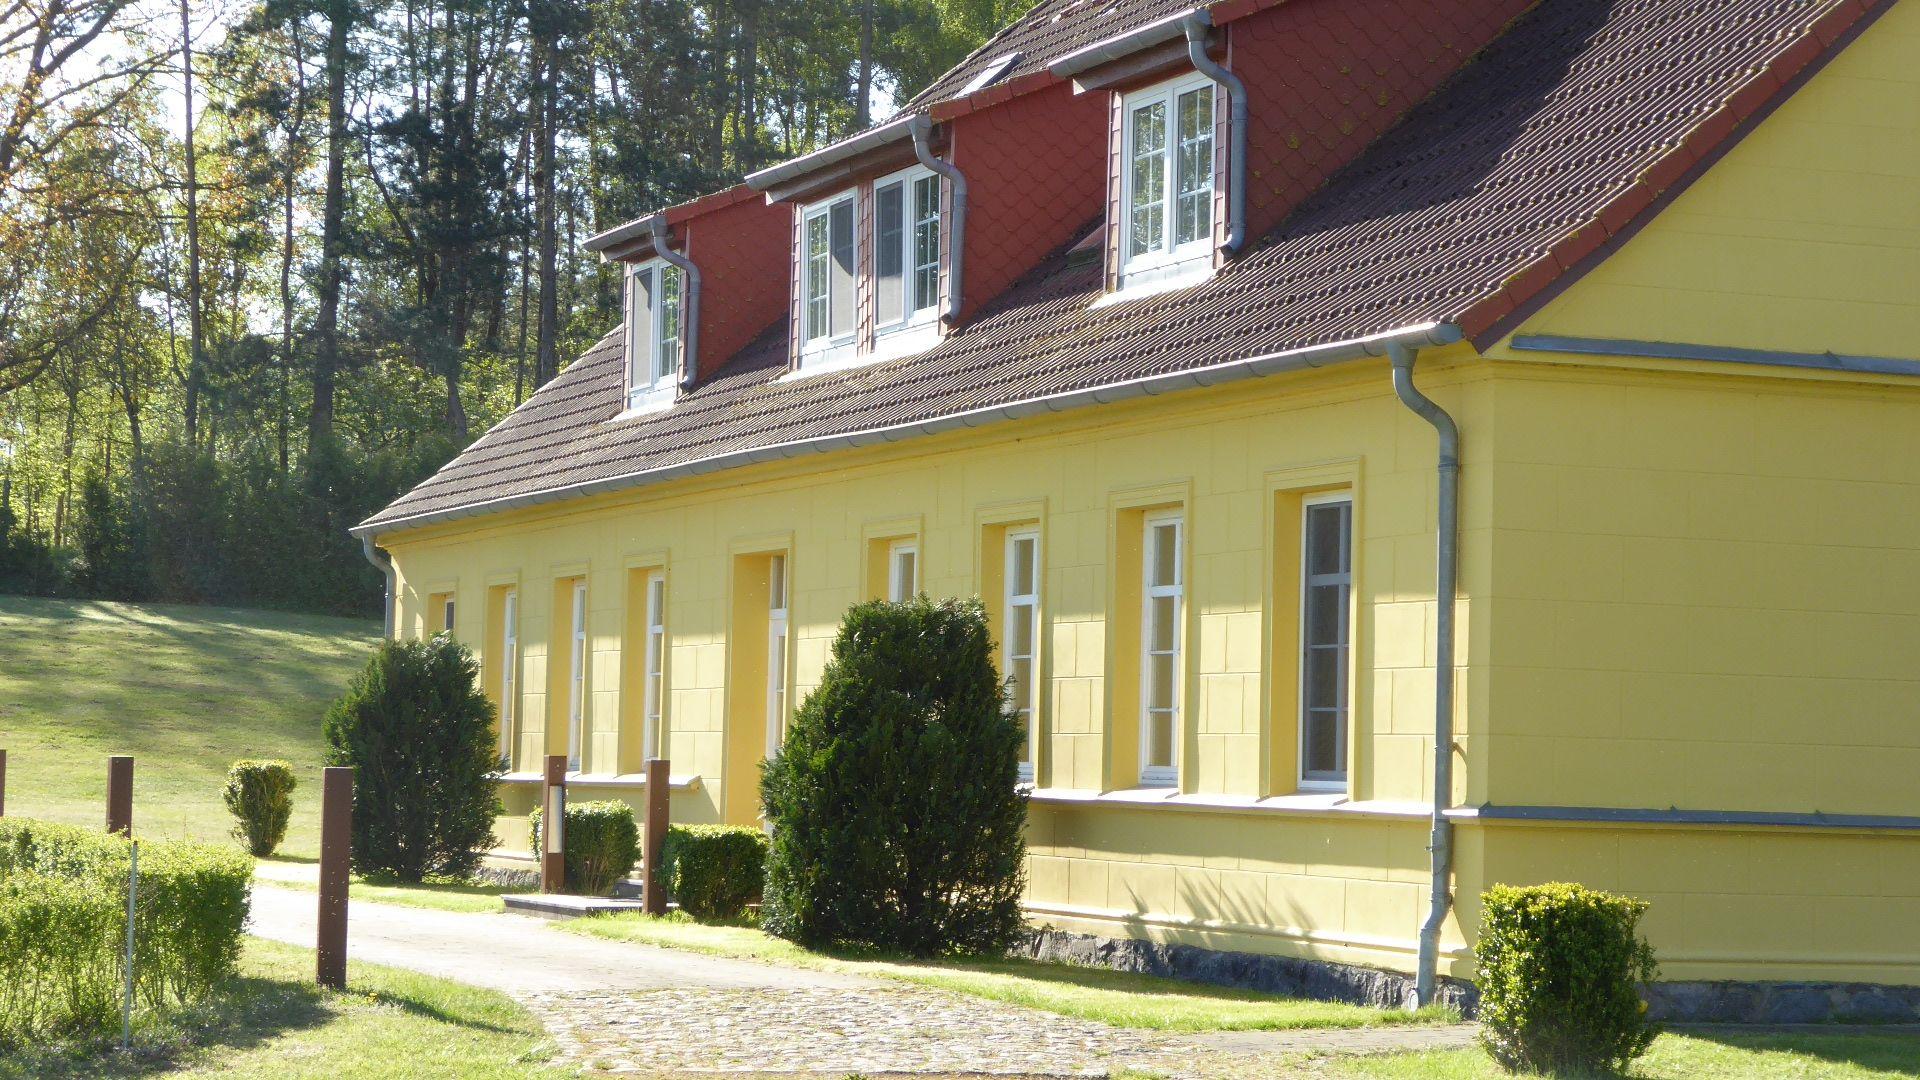 Hochwertige Ferienwohnung in Gingst mit groß Besondere Immobilie in Mecklenburg Vorpommern